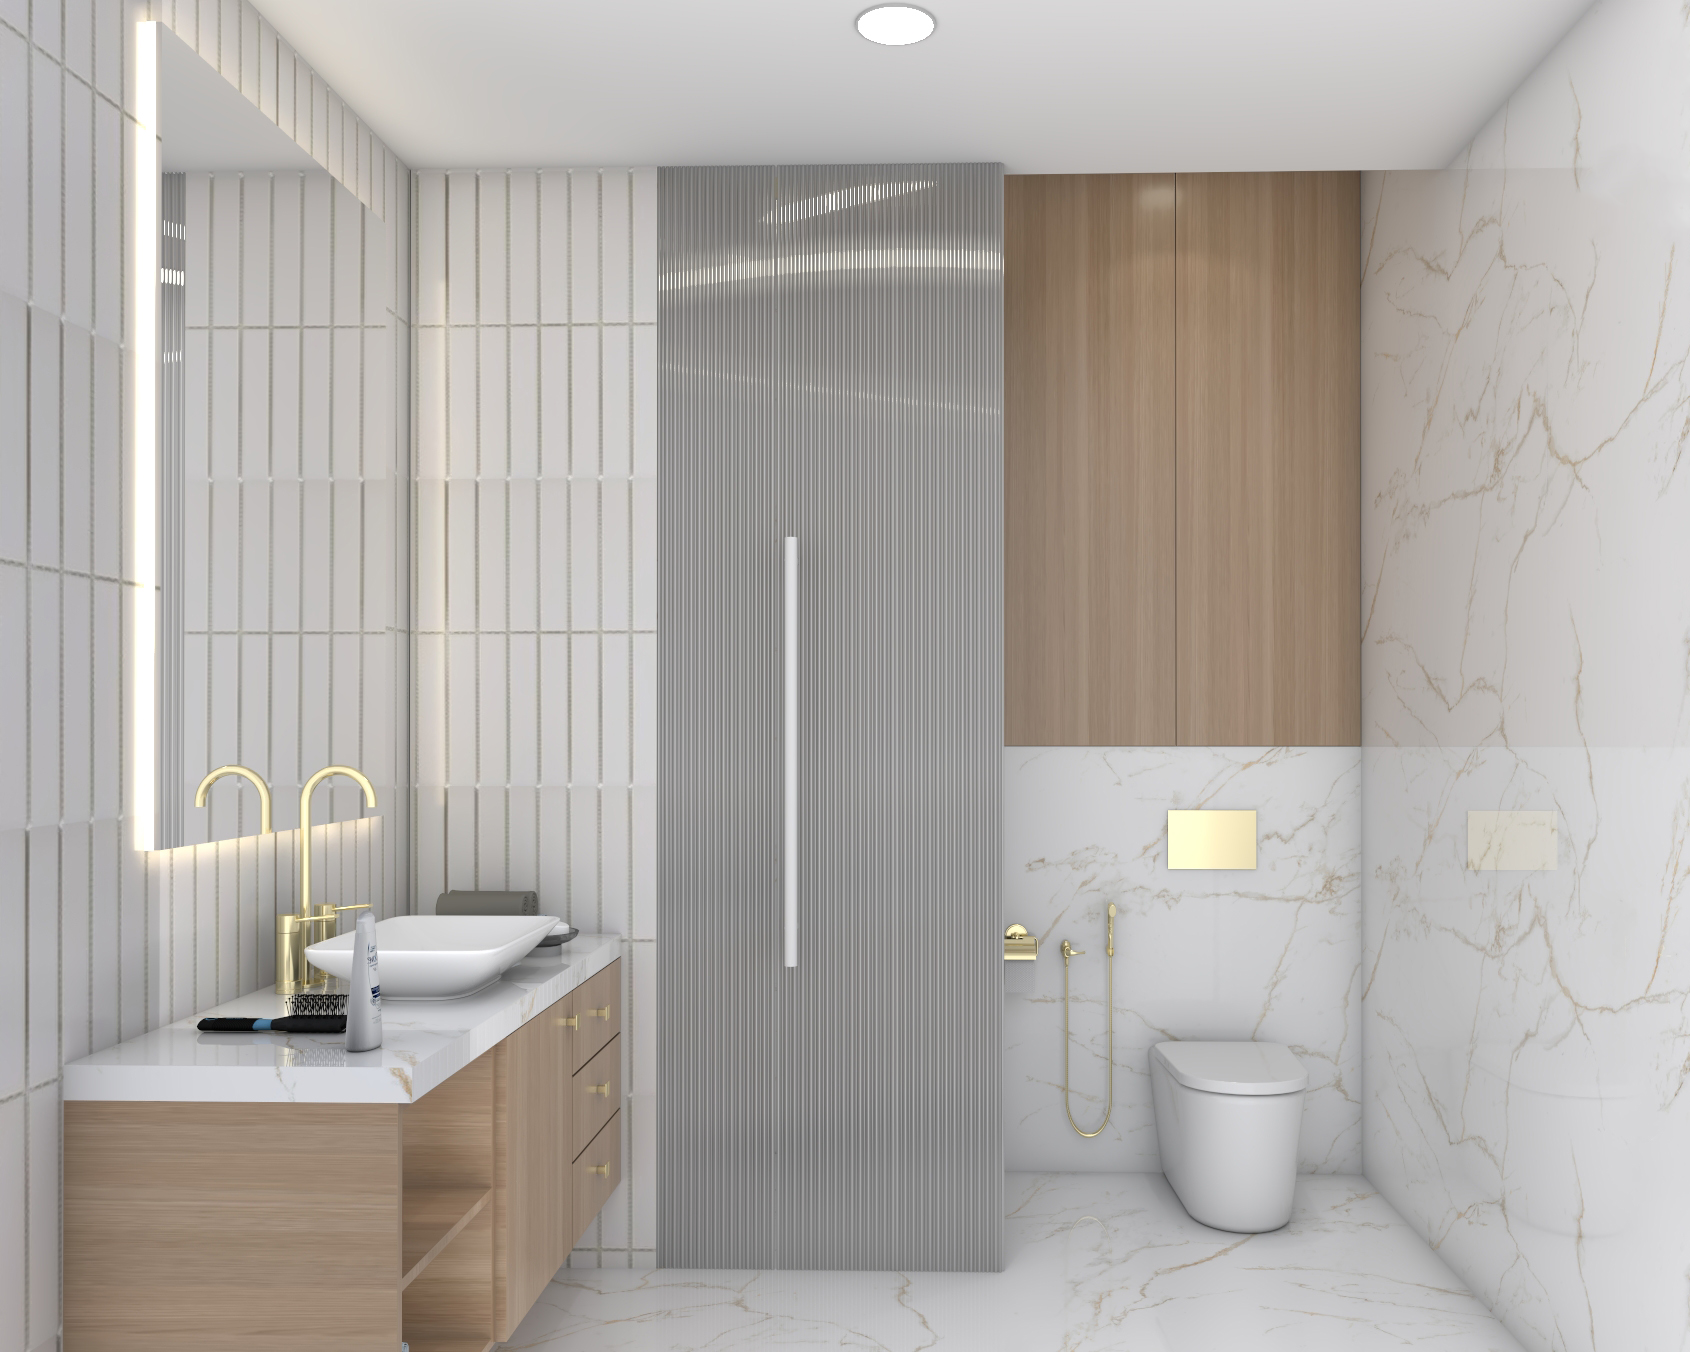 Contemporary Bathroom Design With Vanity Cabinet